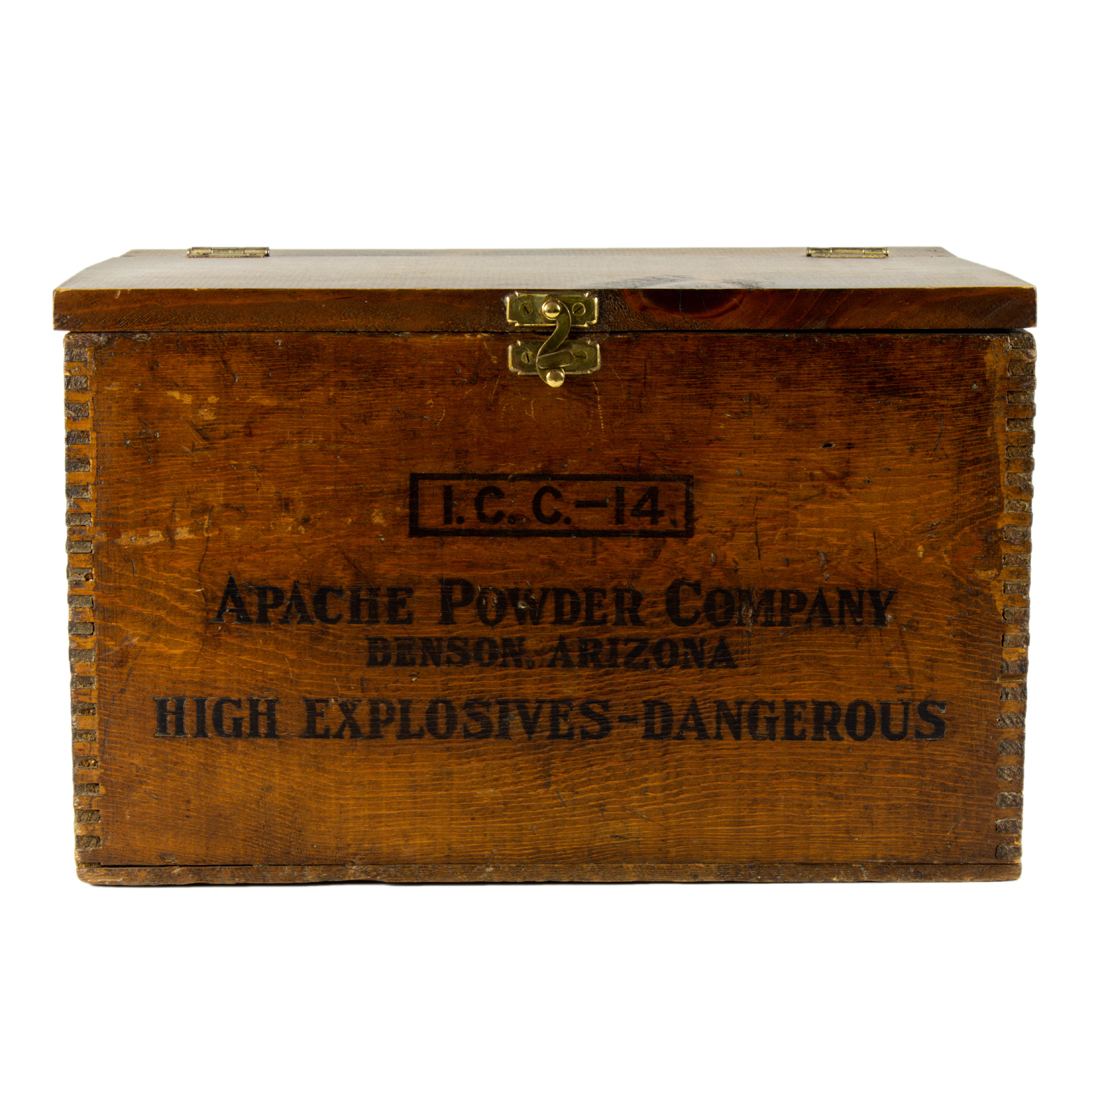 A VINTAGE DYNAMITE BOX A vintage dynamite